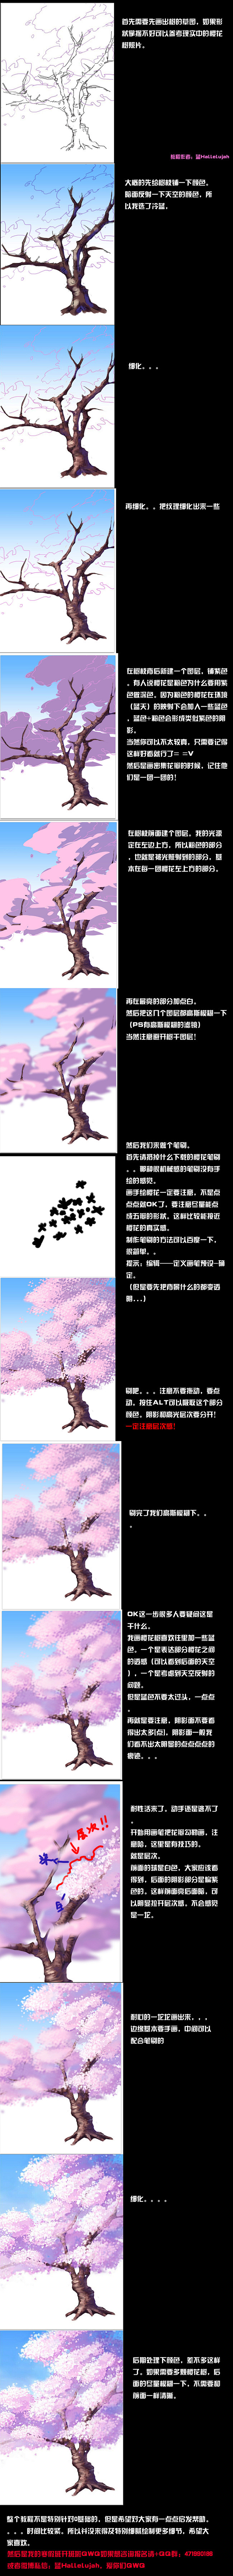 文章-樱花树的绘制方法 | 半次元-AC...